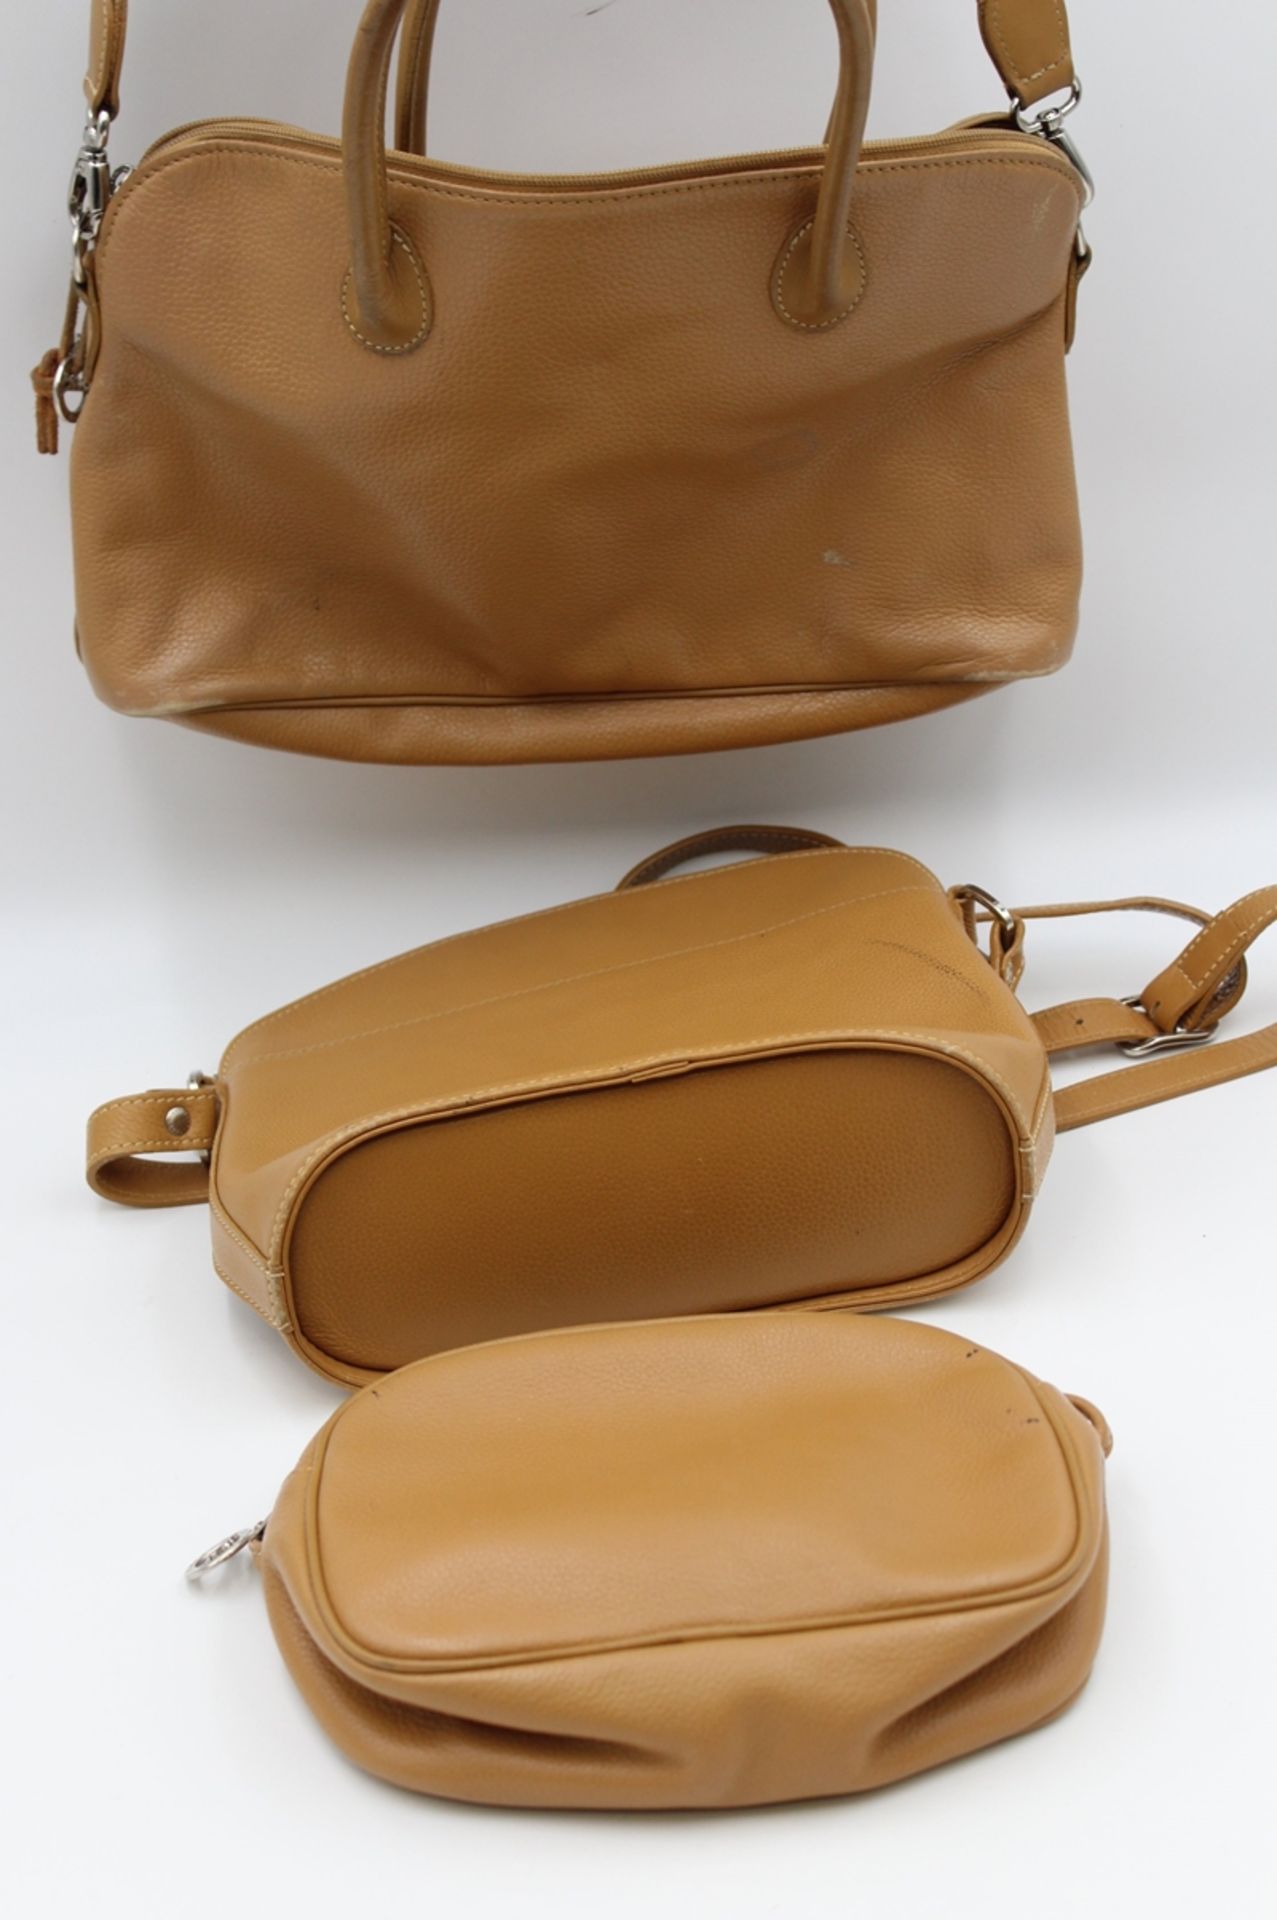 3x div. Handtaschen, Longchamp, Leder, beige, teilw. Tragespuren, Größte ca. 20 x 30cm. - Bild 8 aus 8